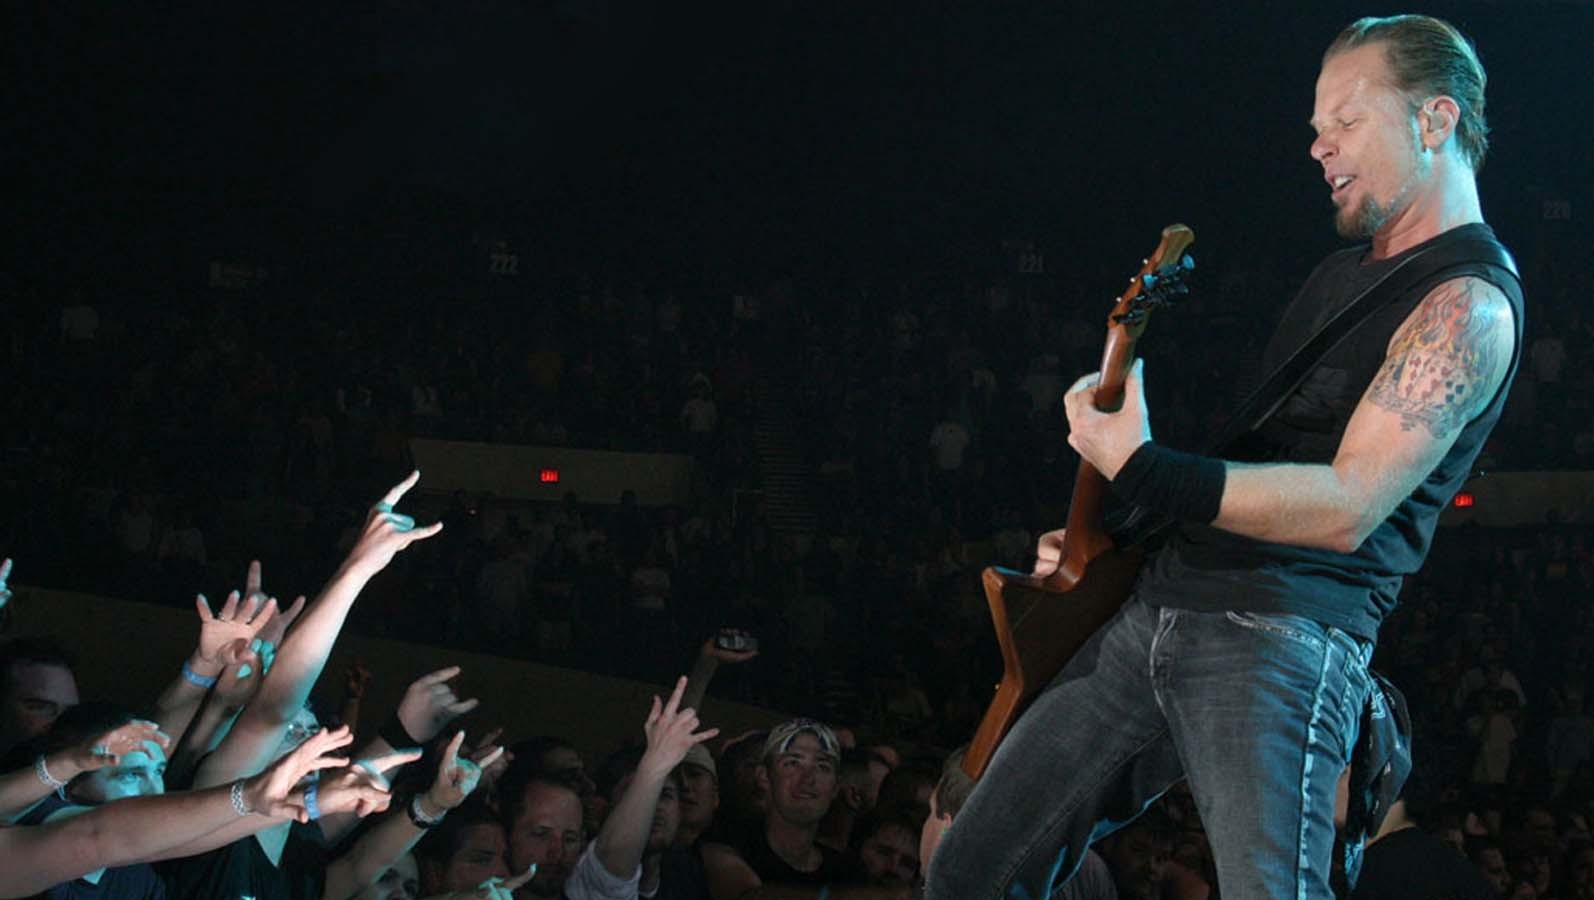 Guitarist Electric Guitar Big 4 Concerts Heavy Metal Audience People James Hetfield Metallica 1594x900